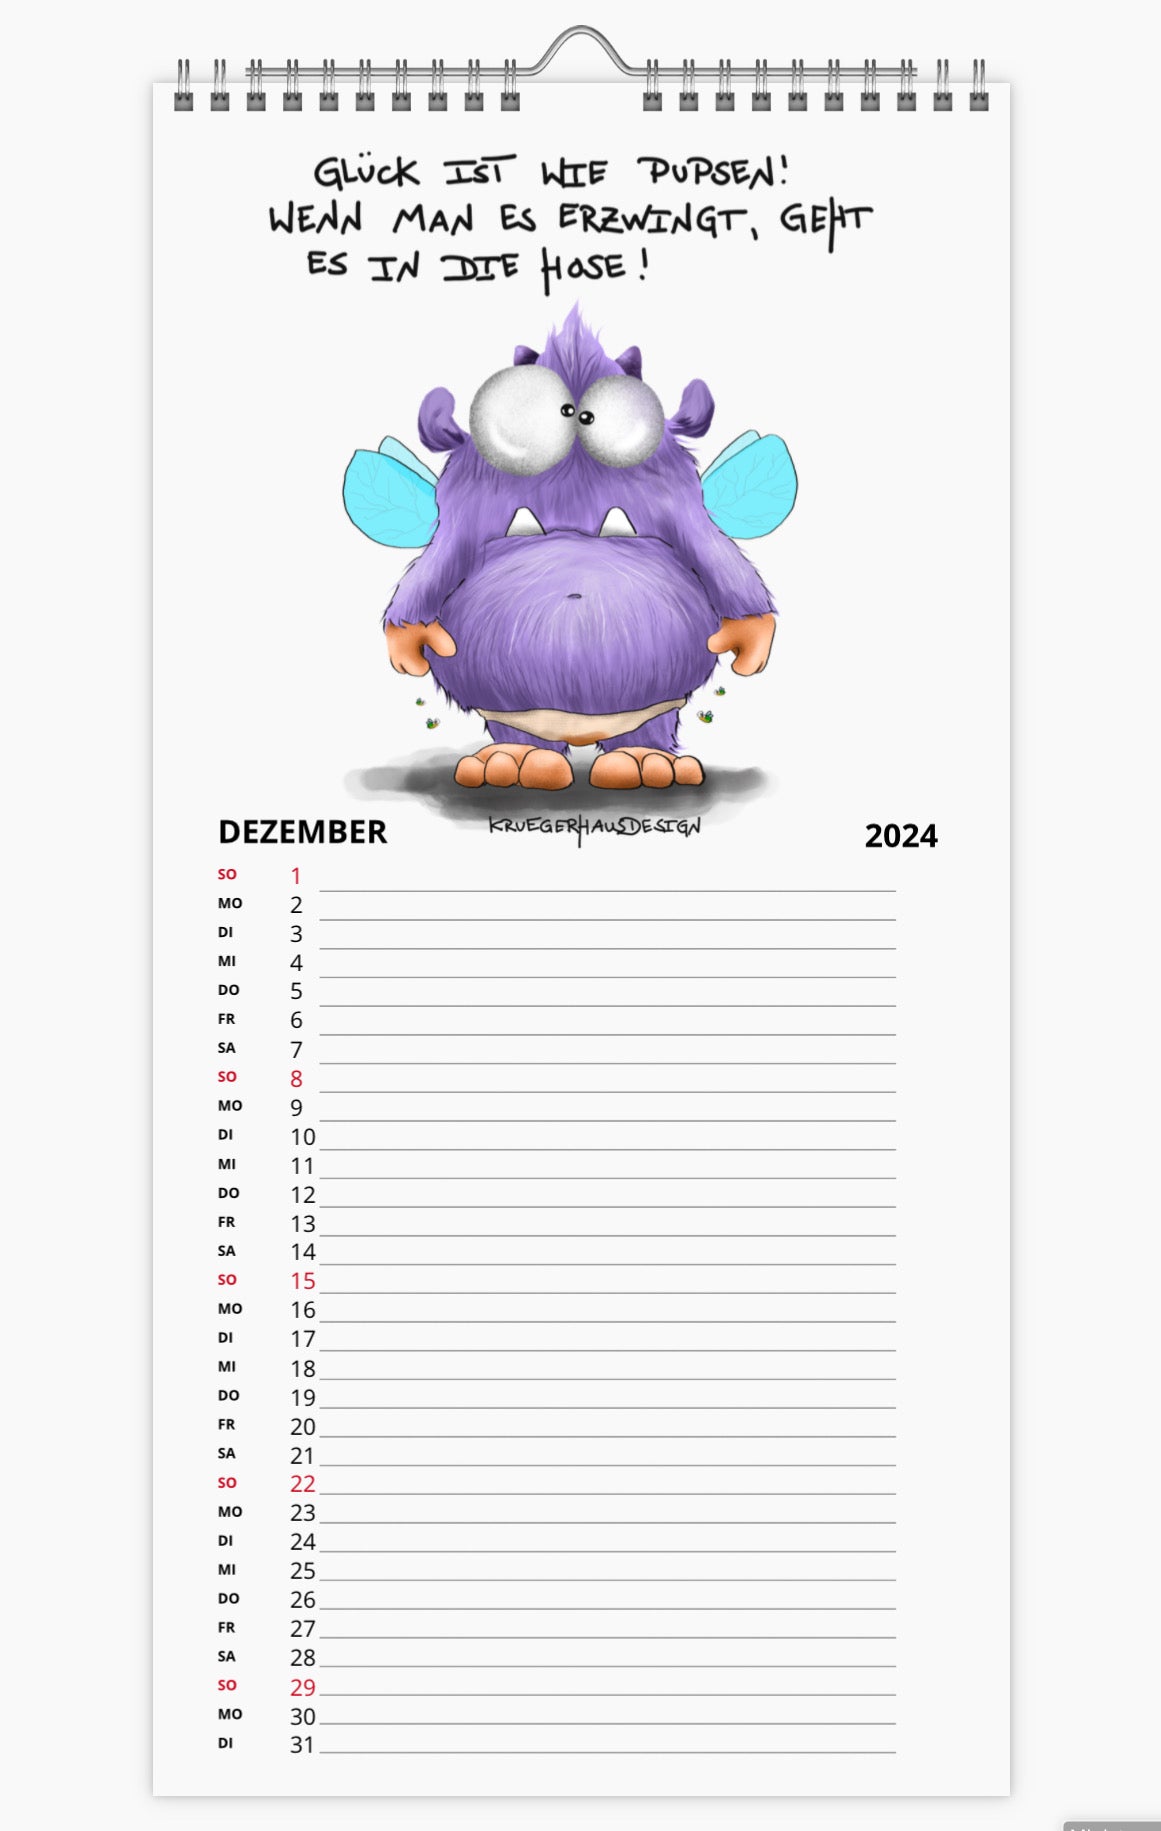 Kalender Terminkalender Küchenkalender groß  Kruegerhausdesign Monster 2024 Design  1